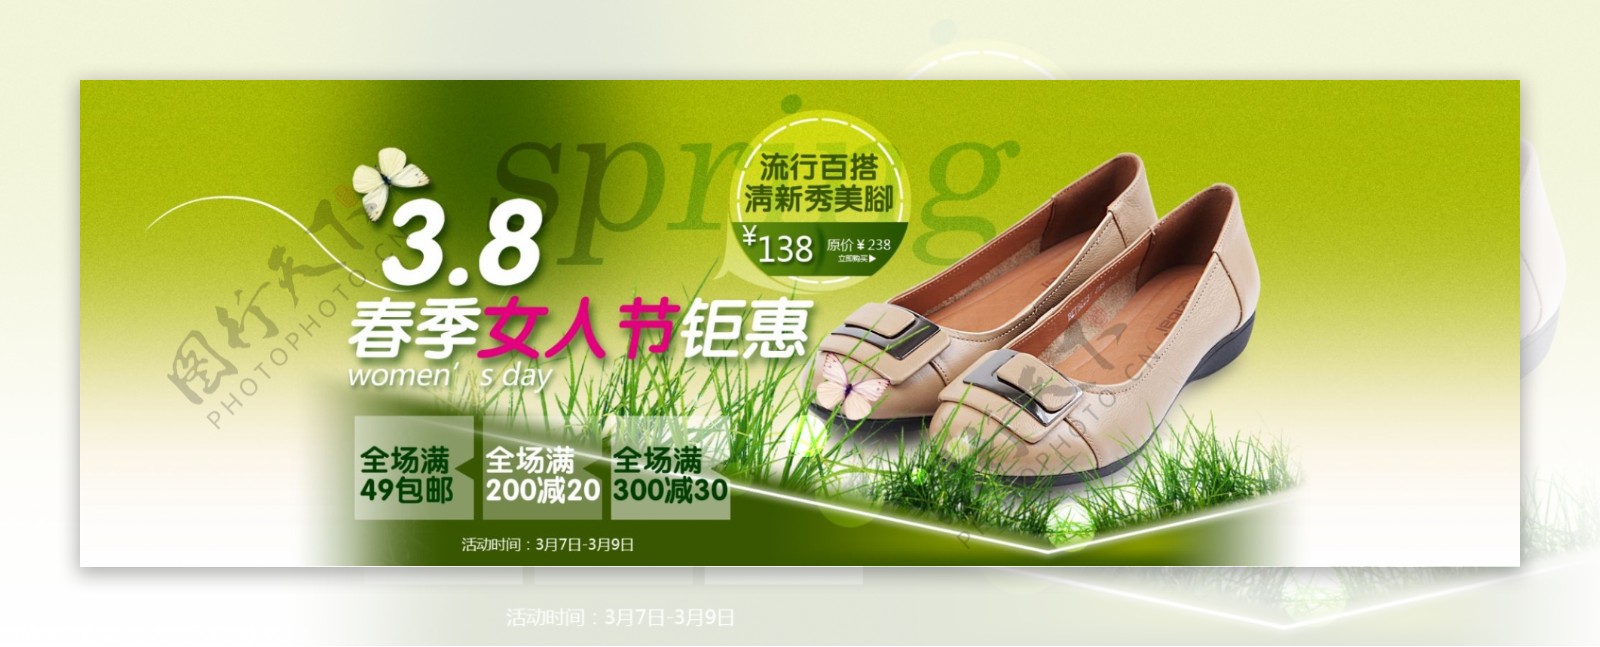 鞋子活动广告图片